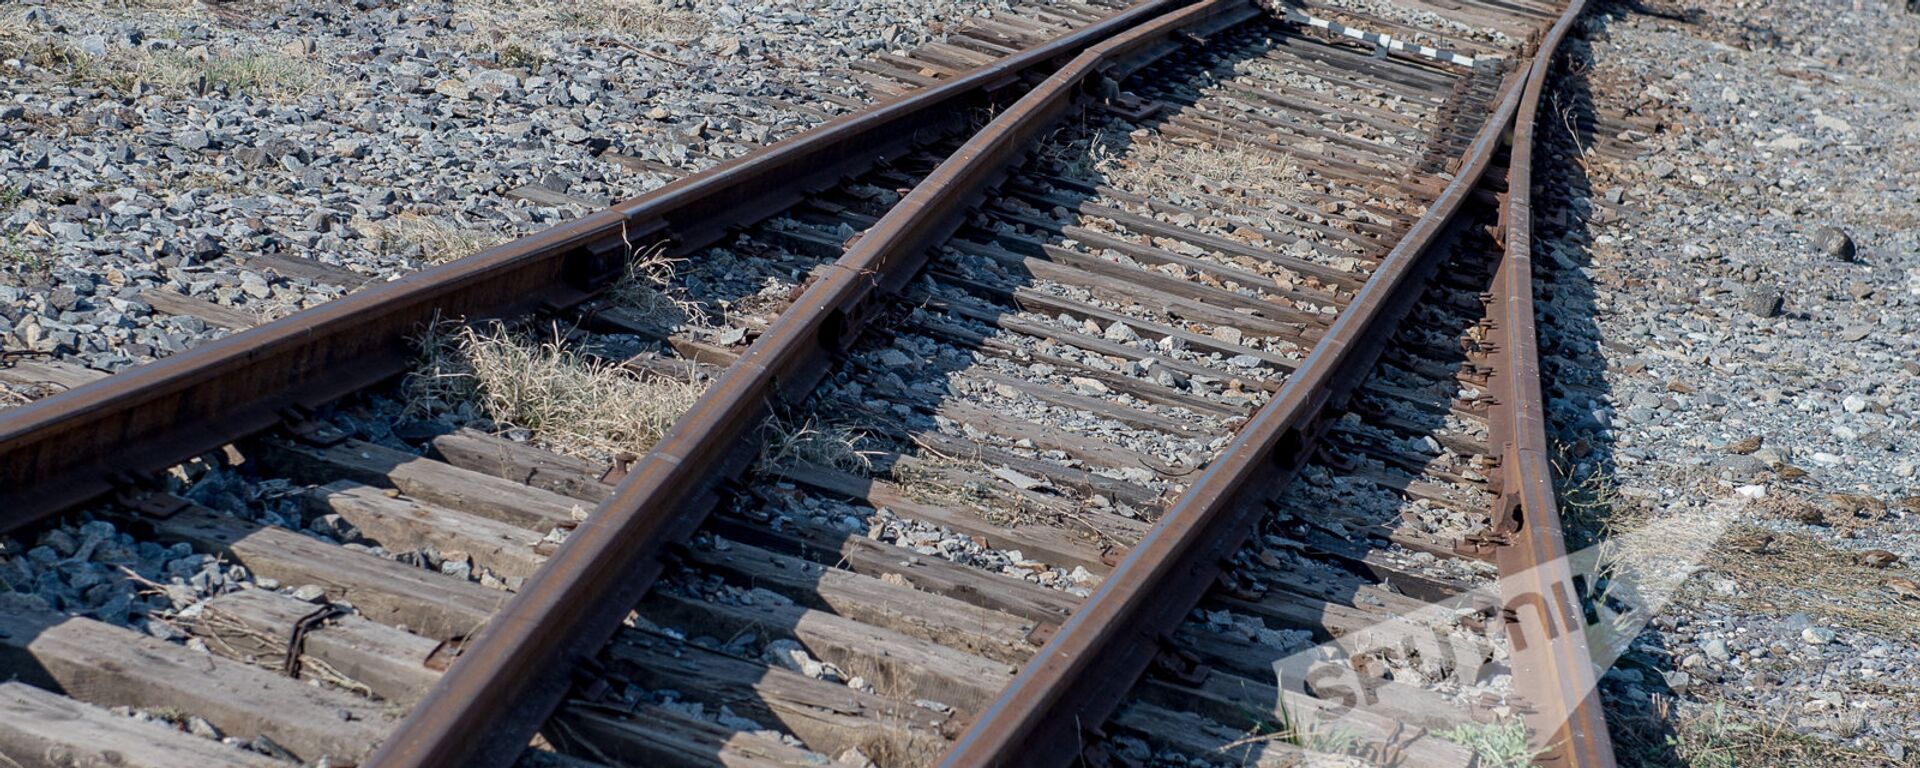 ЗАО Южно-кавказская железная дорога сдала в эксплуатацию электропоезд - Sputnik Армения, 1920, 27.12.2020